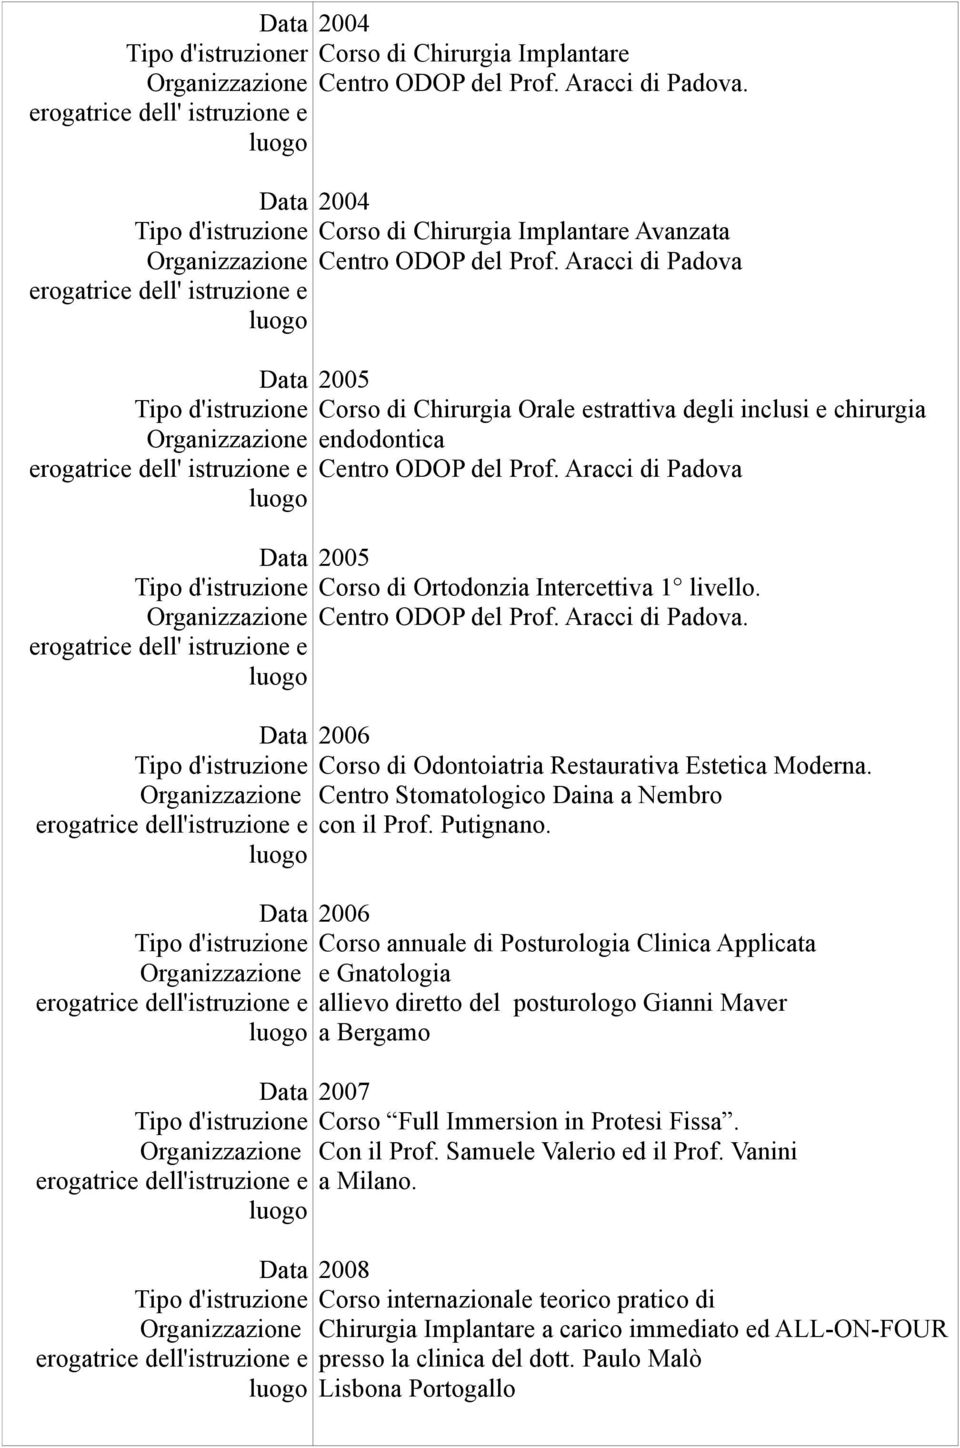 2006 Corso di Odontoiatria Restaurativa Estetica Moderna. Centro Stomatologico Daina a Nembro con il Prof. Putignano.